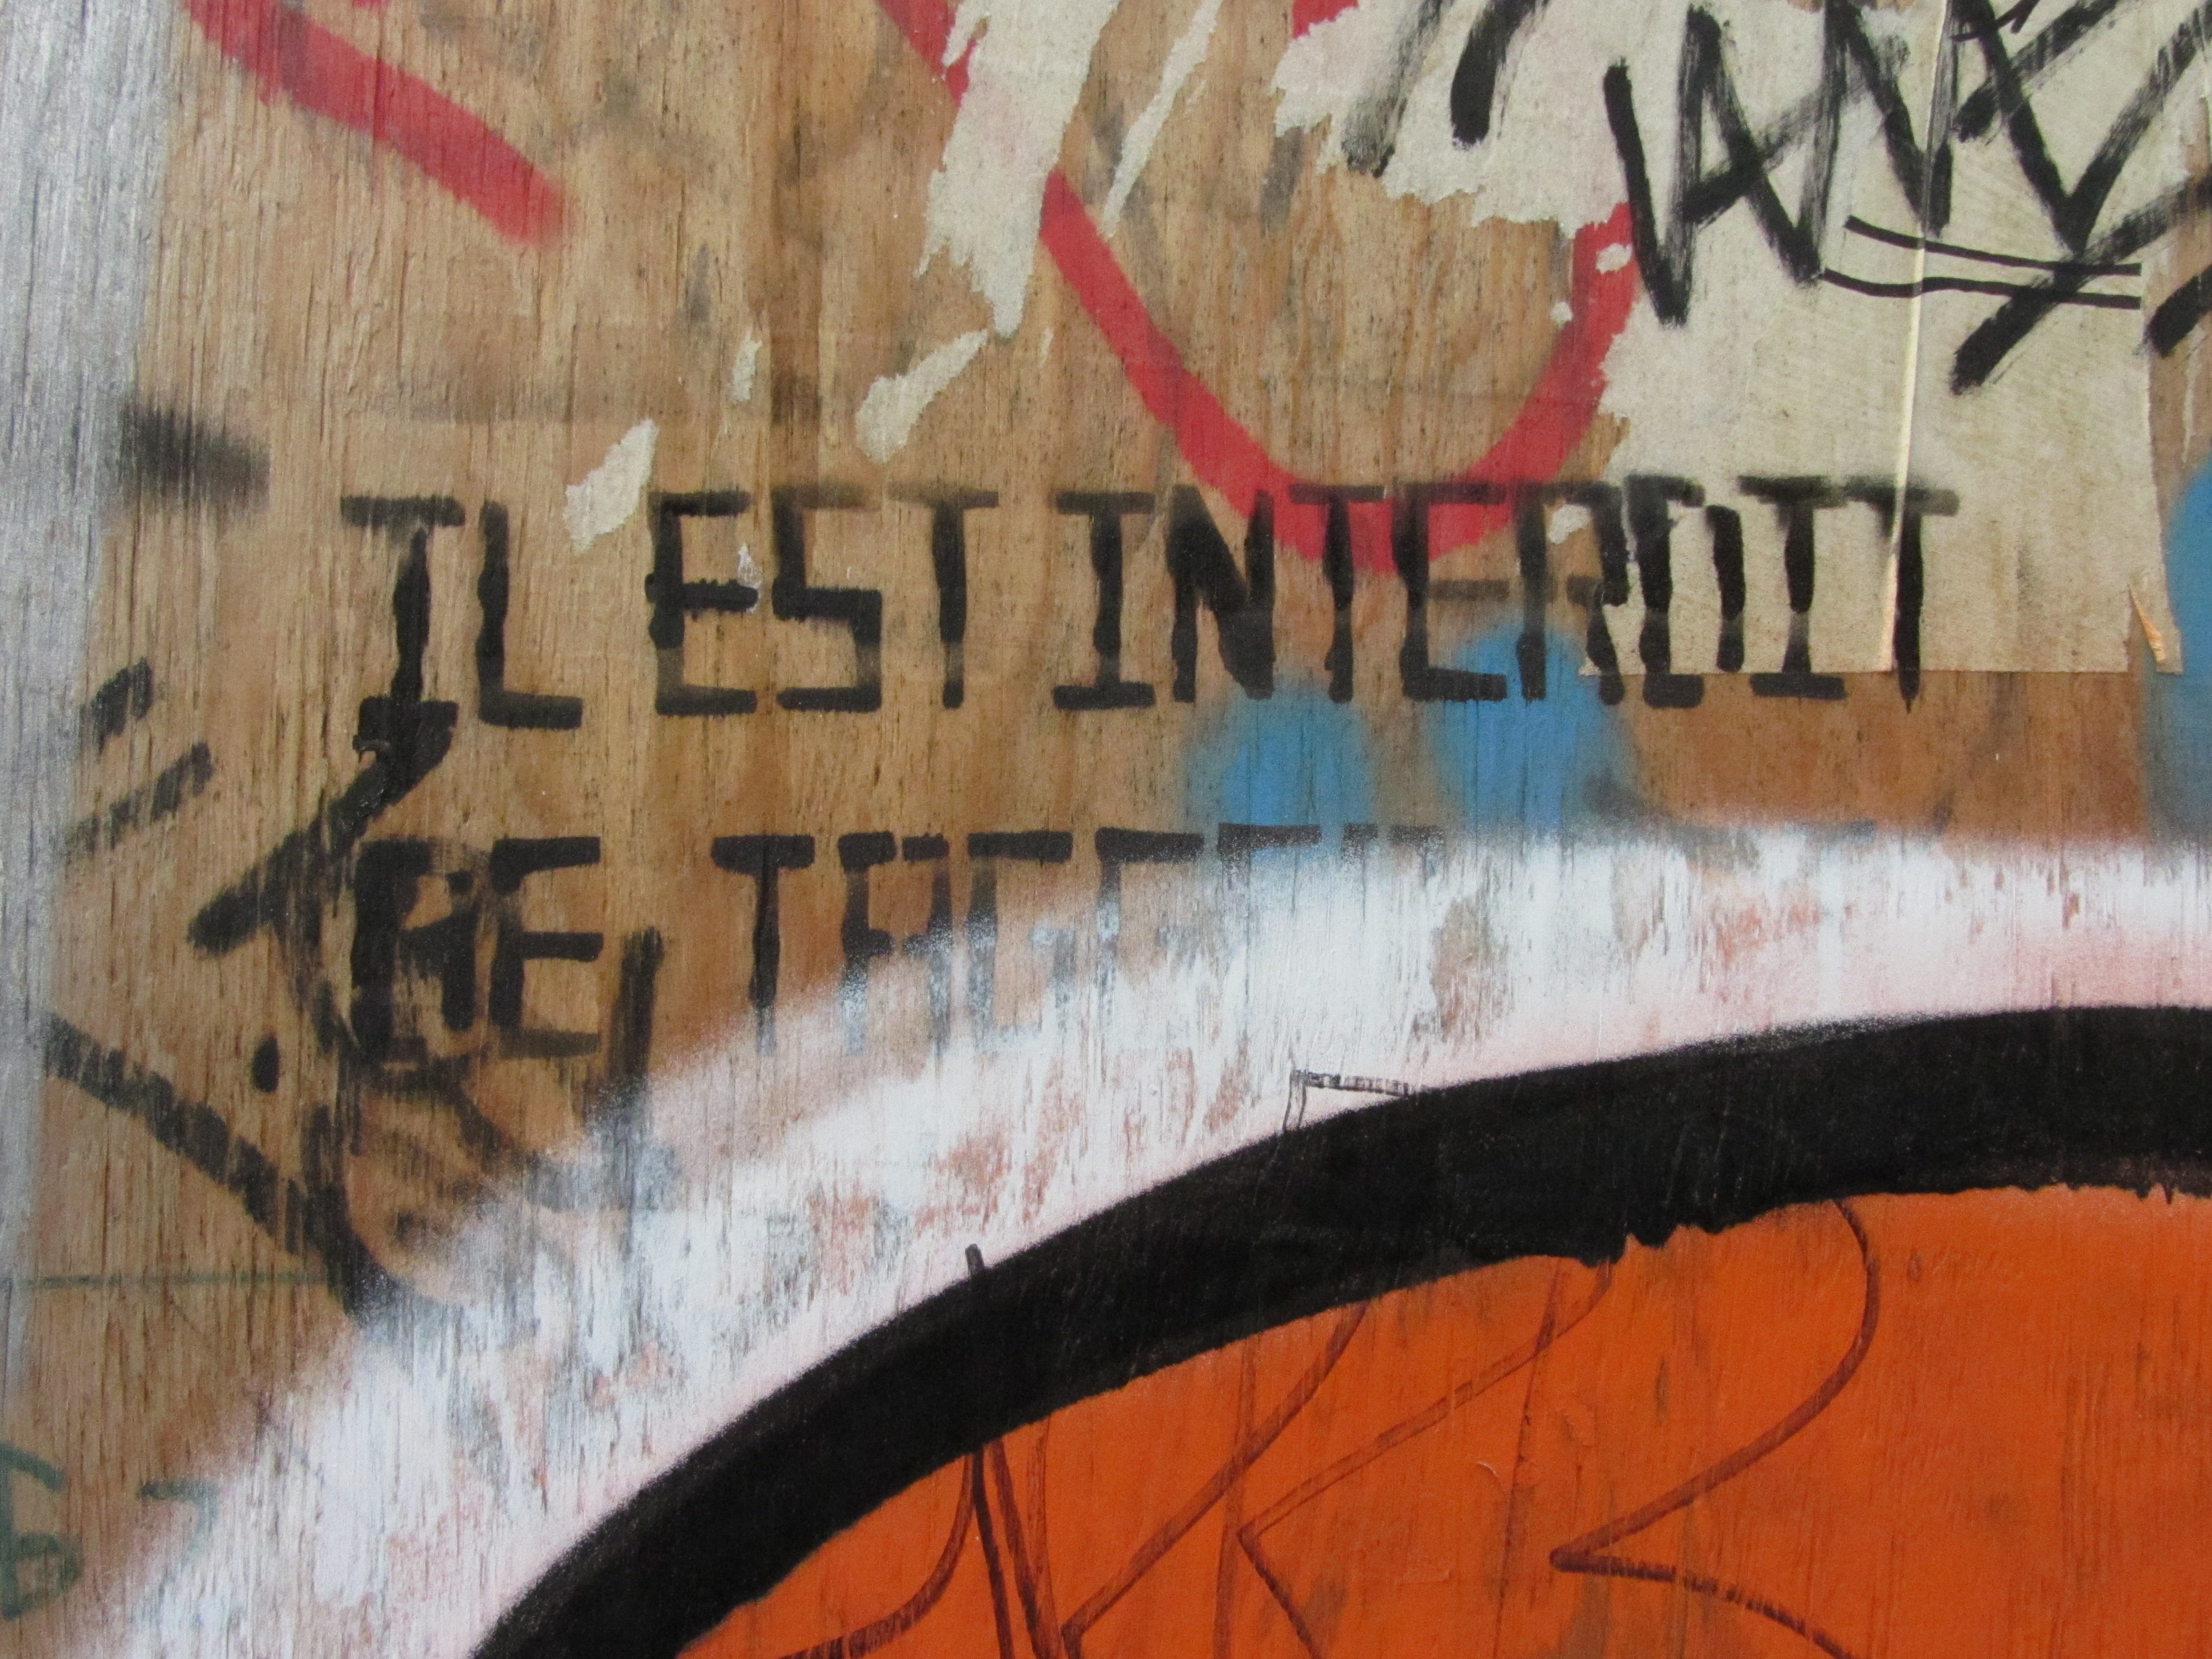 Panneau en bois sur lequel la mention "Il est interdit de tagguer" est peinte au pochoir et à moitié recouverte de tags.